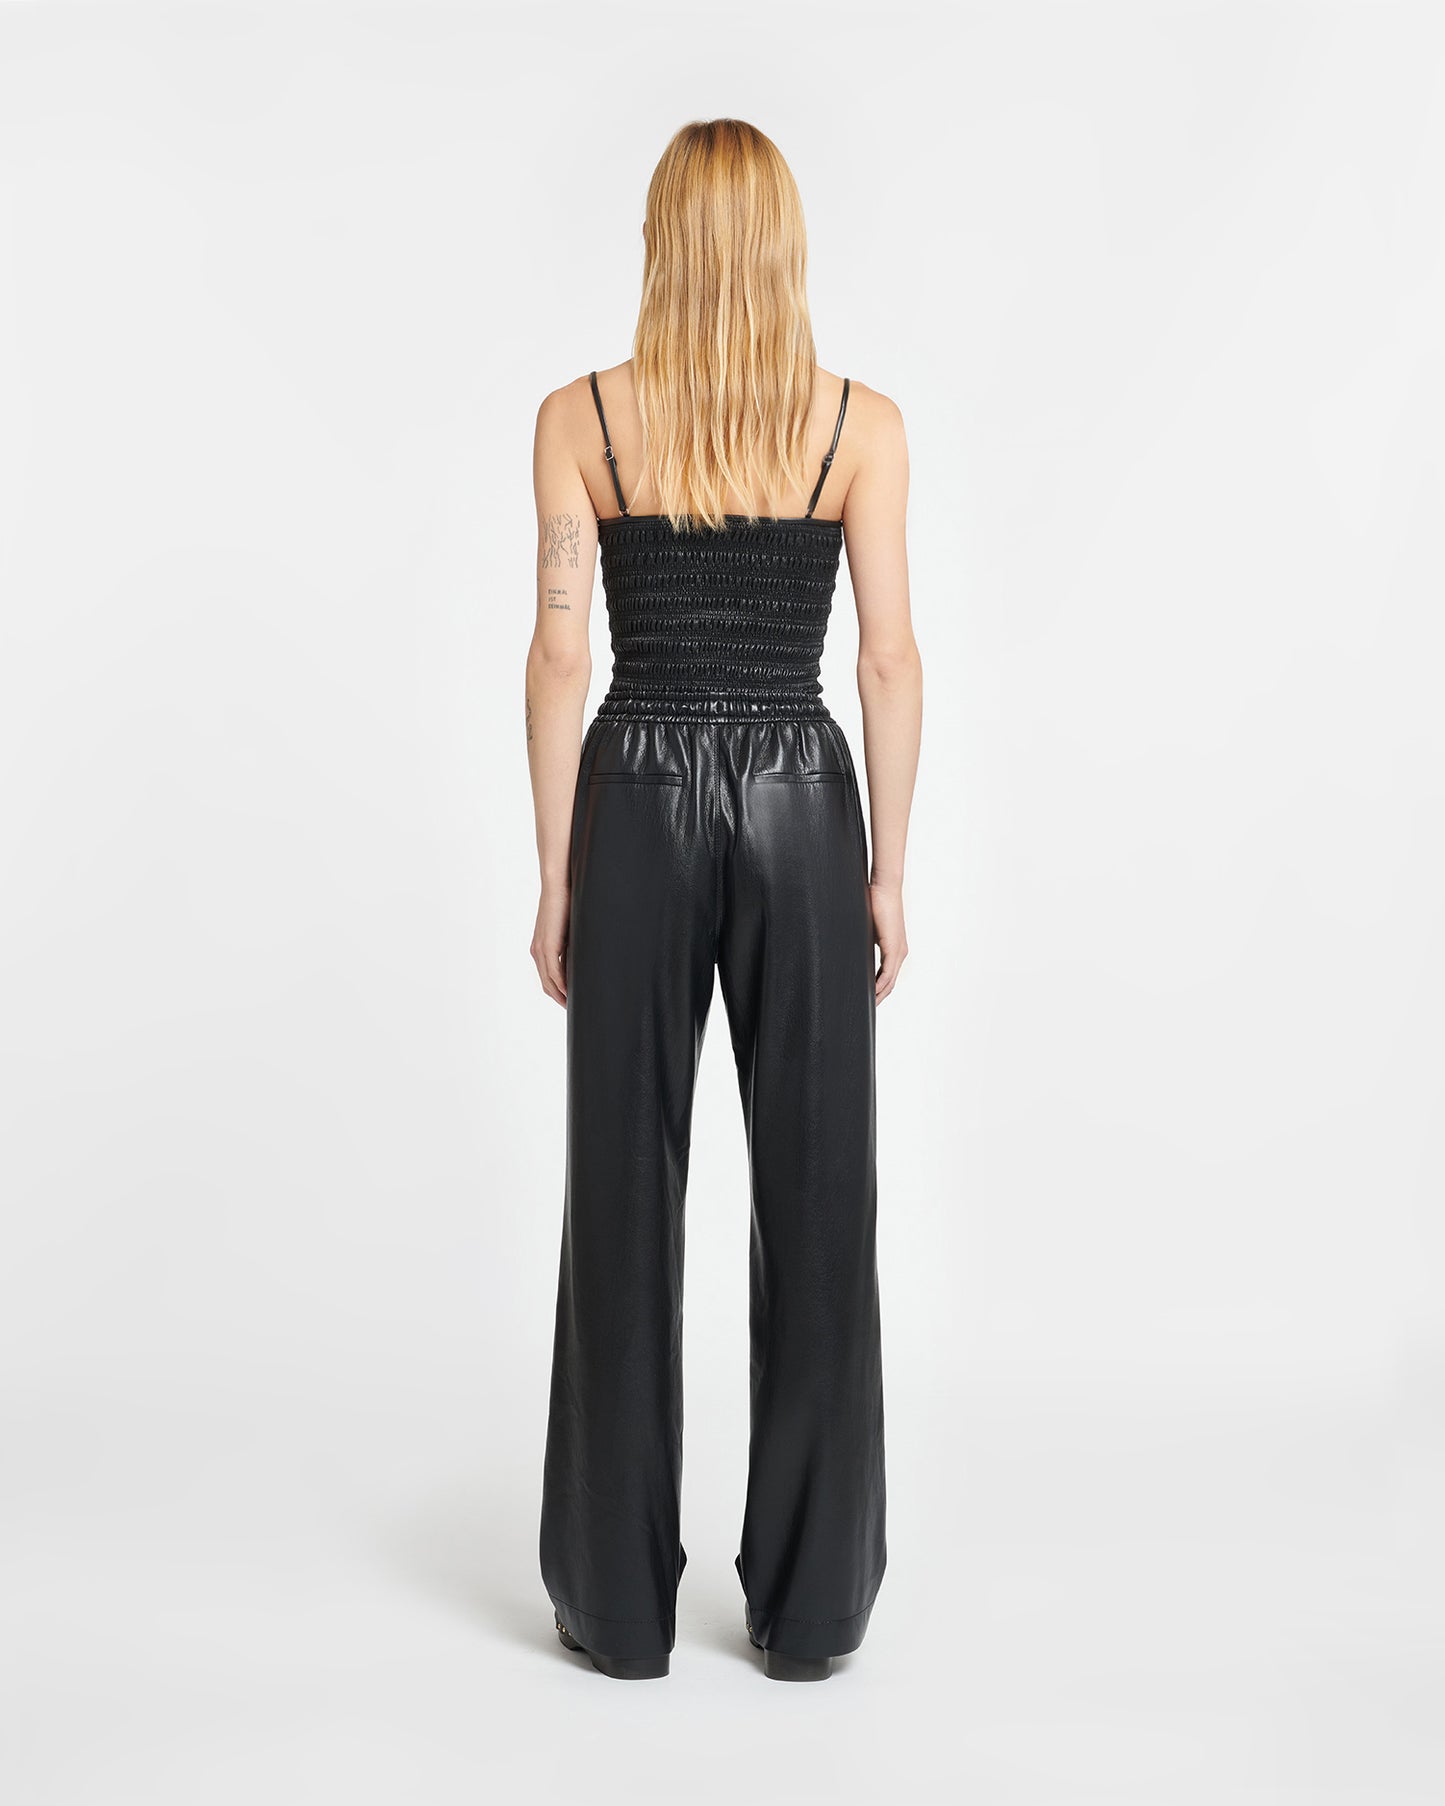 Gisela - Okobor™ Alt-Leather Drawstring Pants - Black/Creme